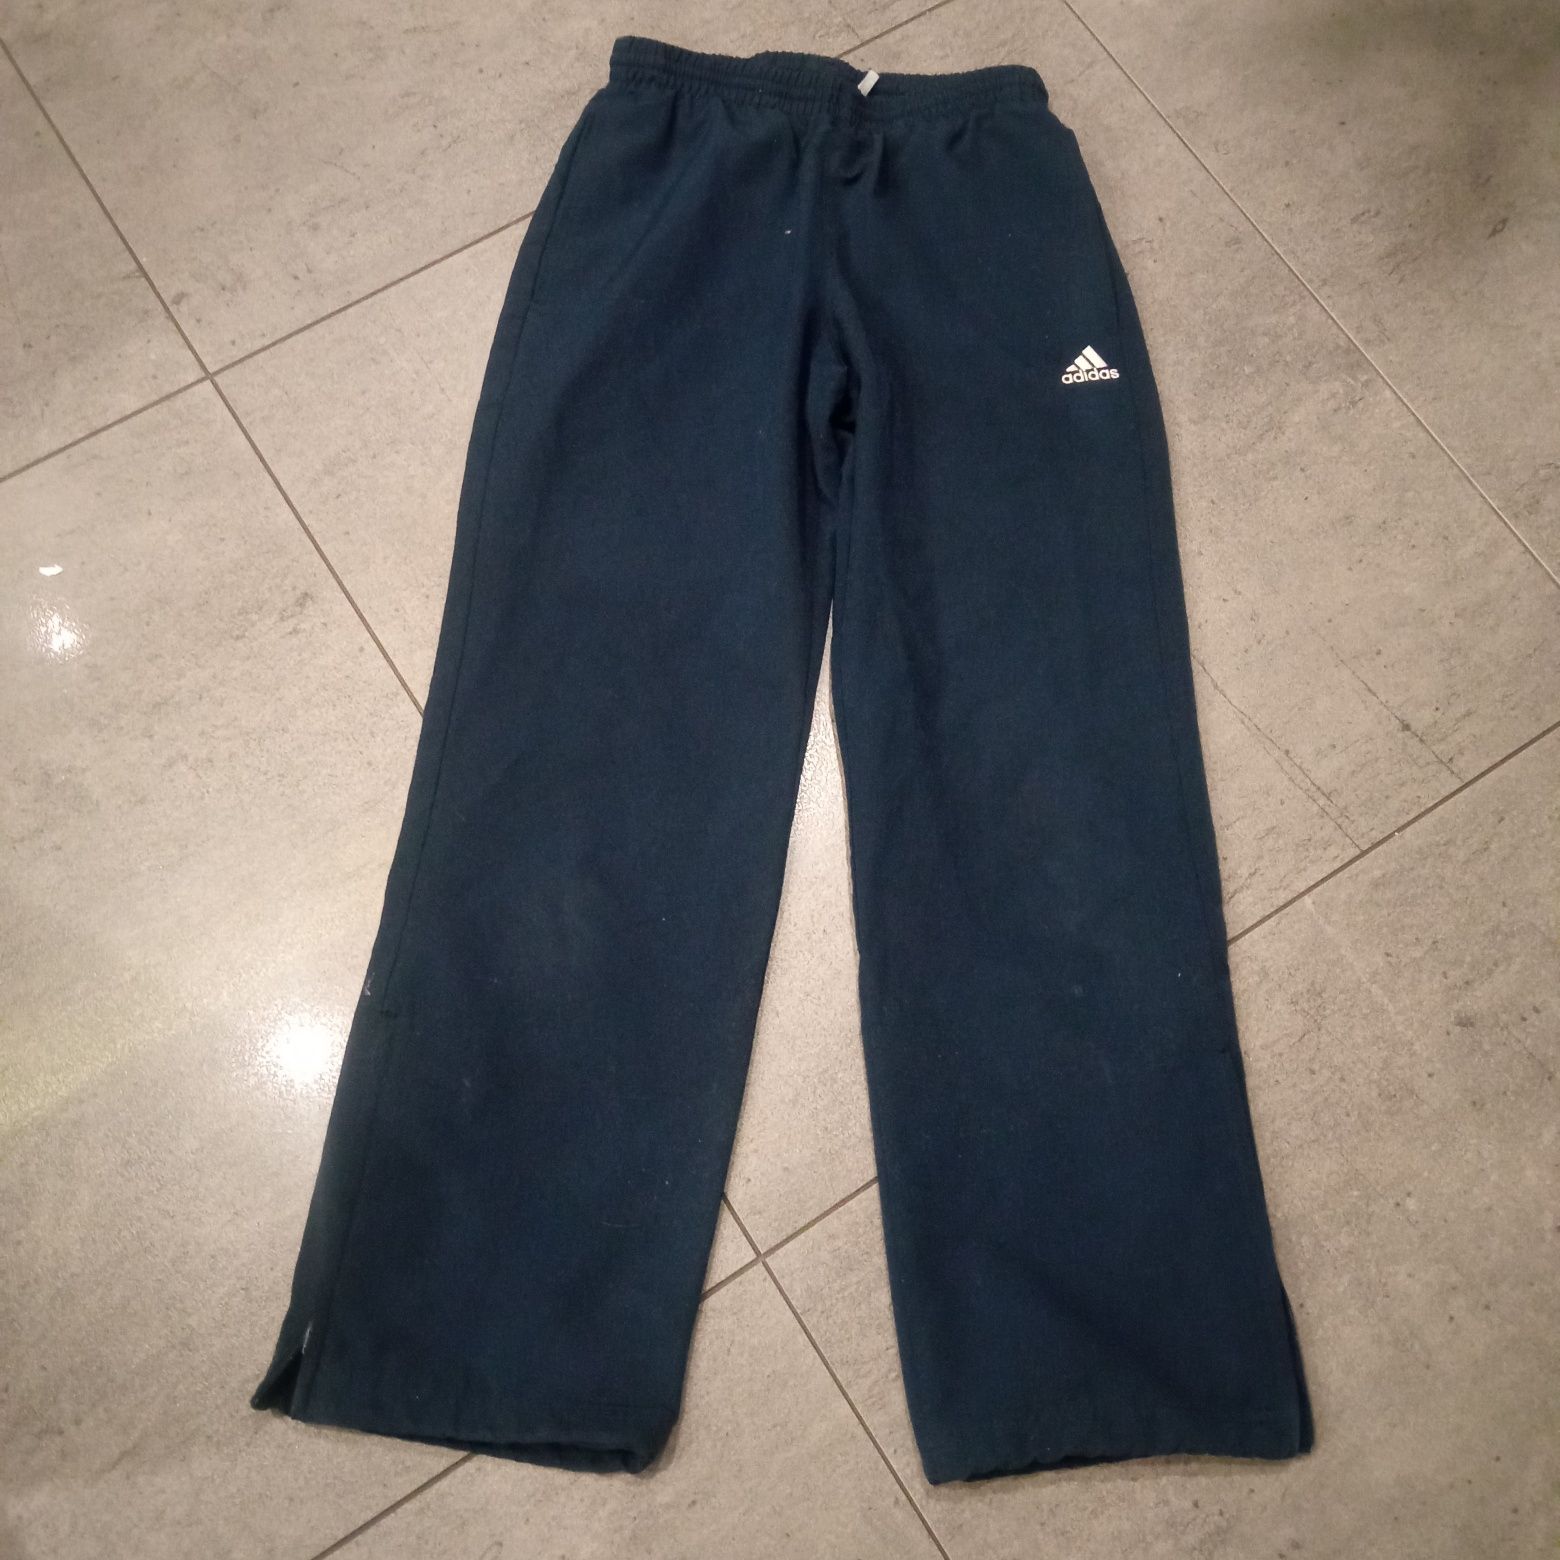 Spodnie dresowe Adidas, rozmiar 140 cm